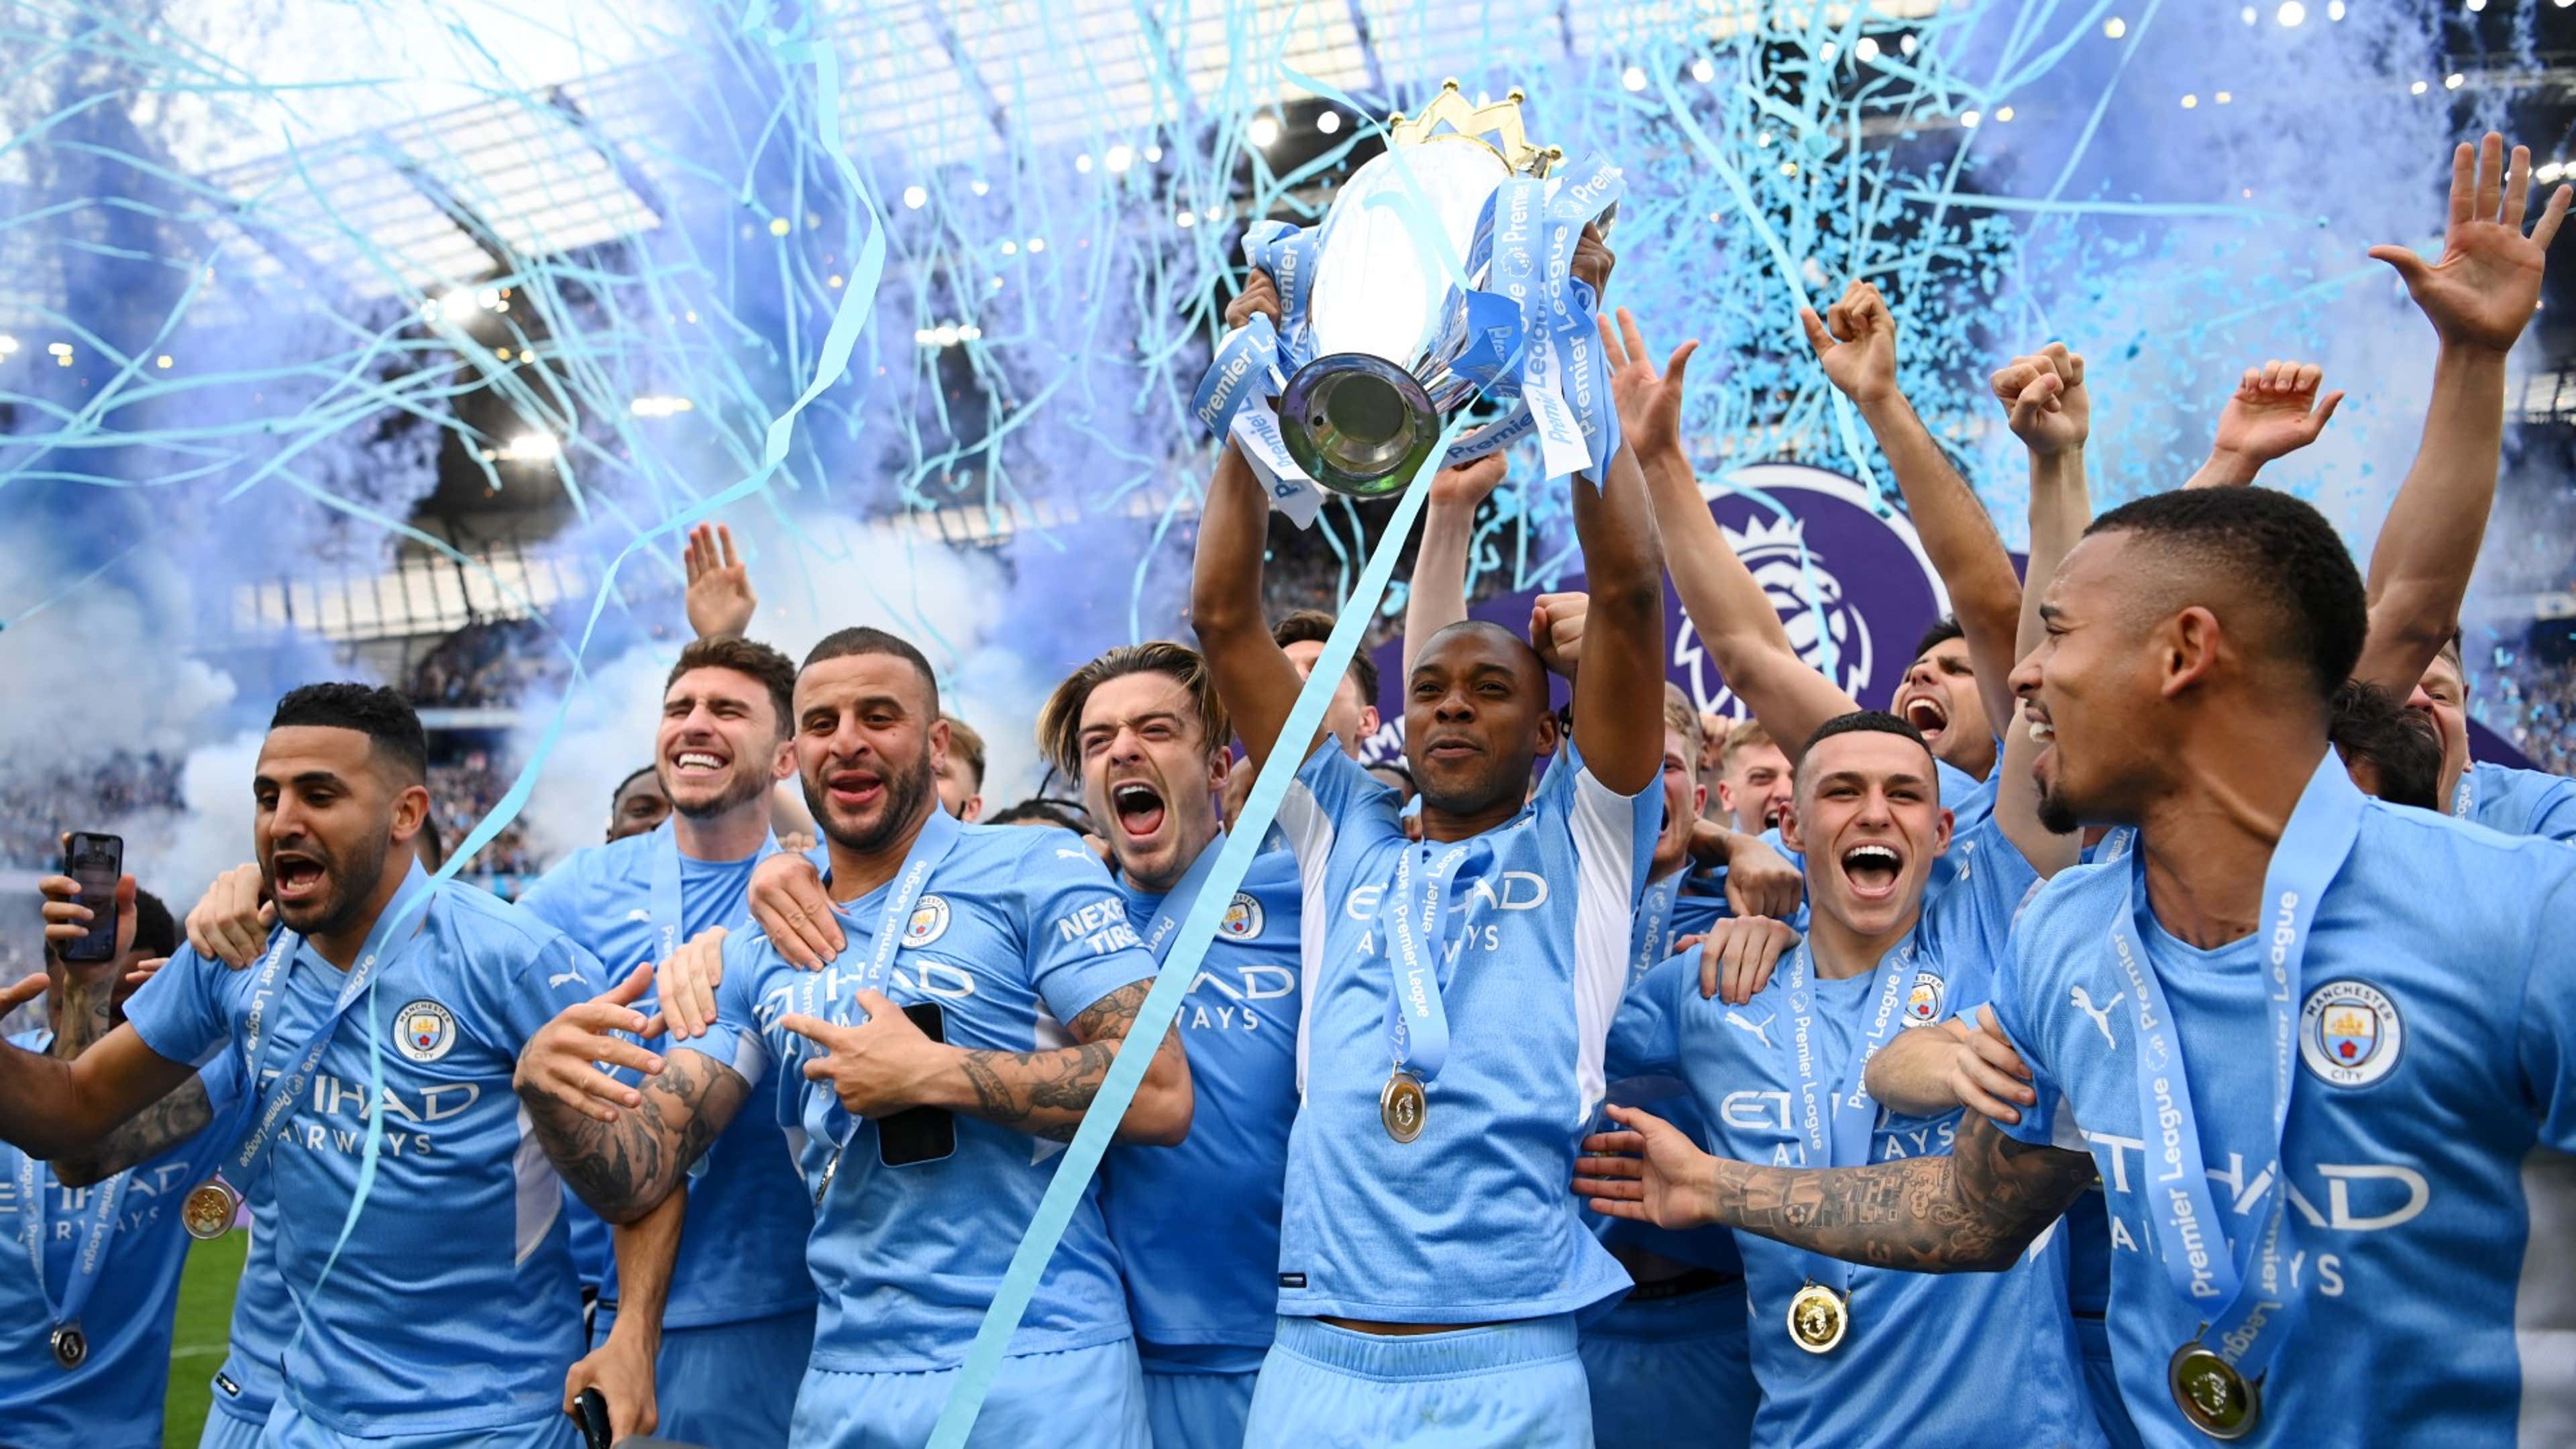 Fernandinho Manchester City Premier League champions trophy 2021-22